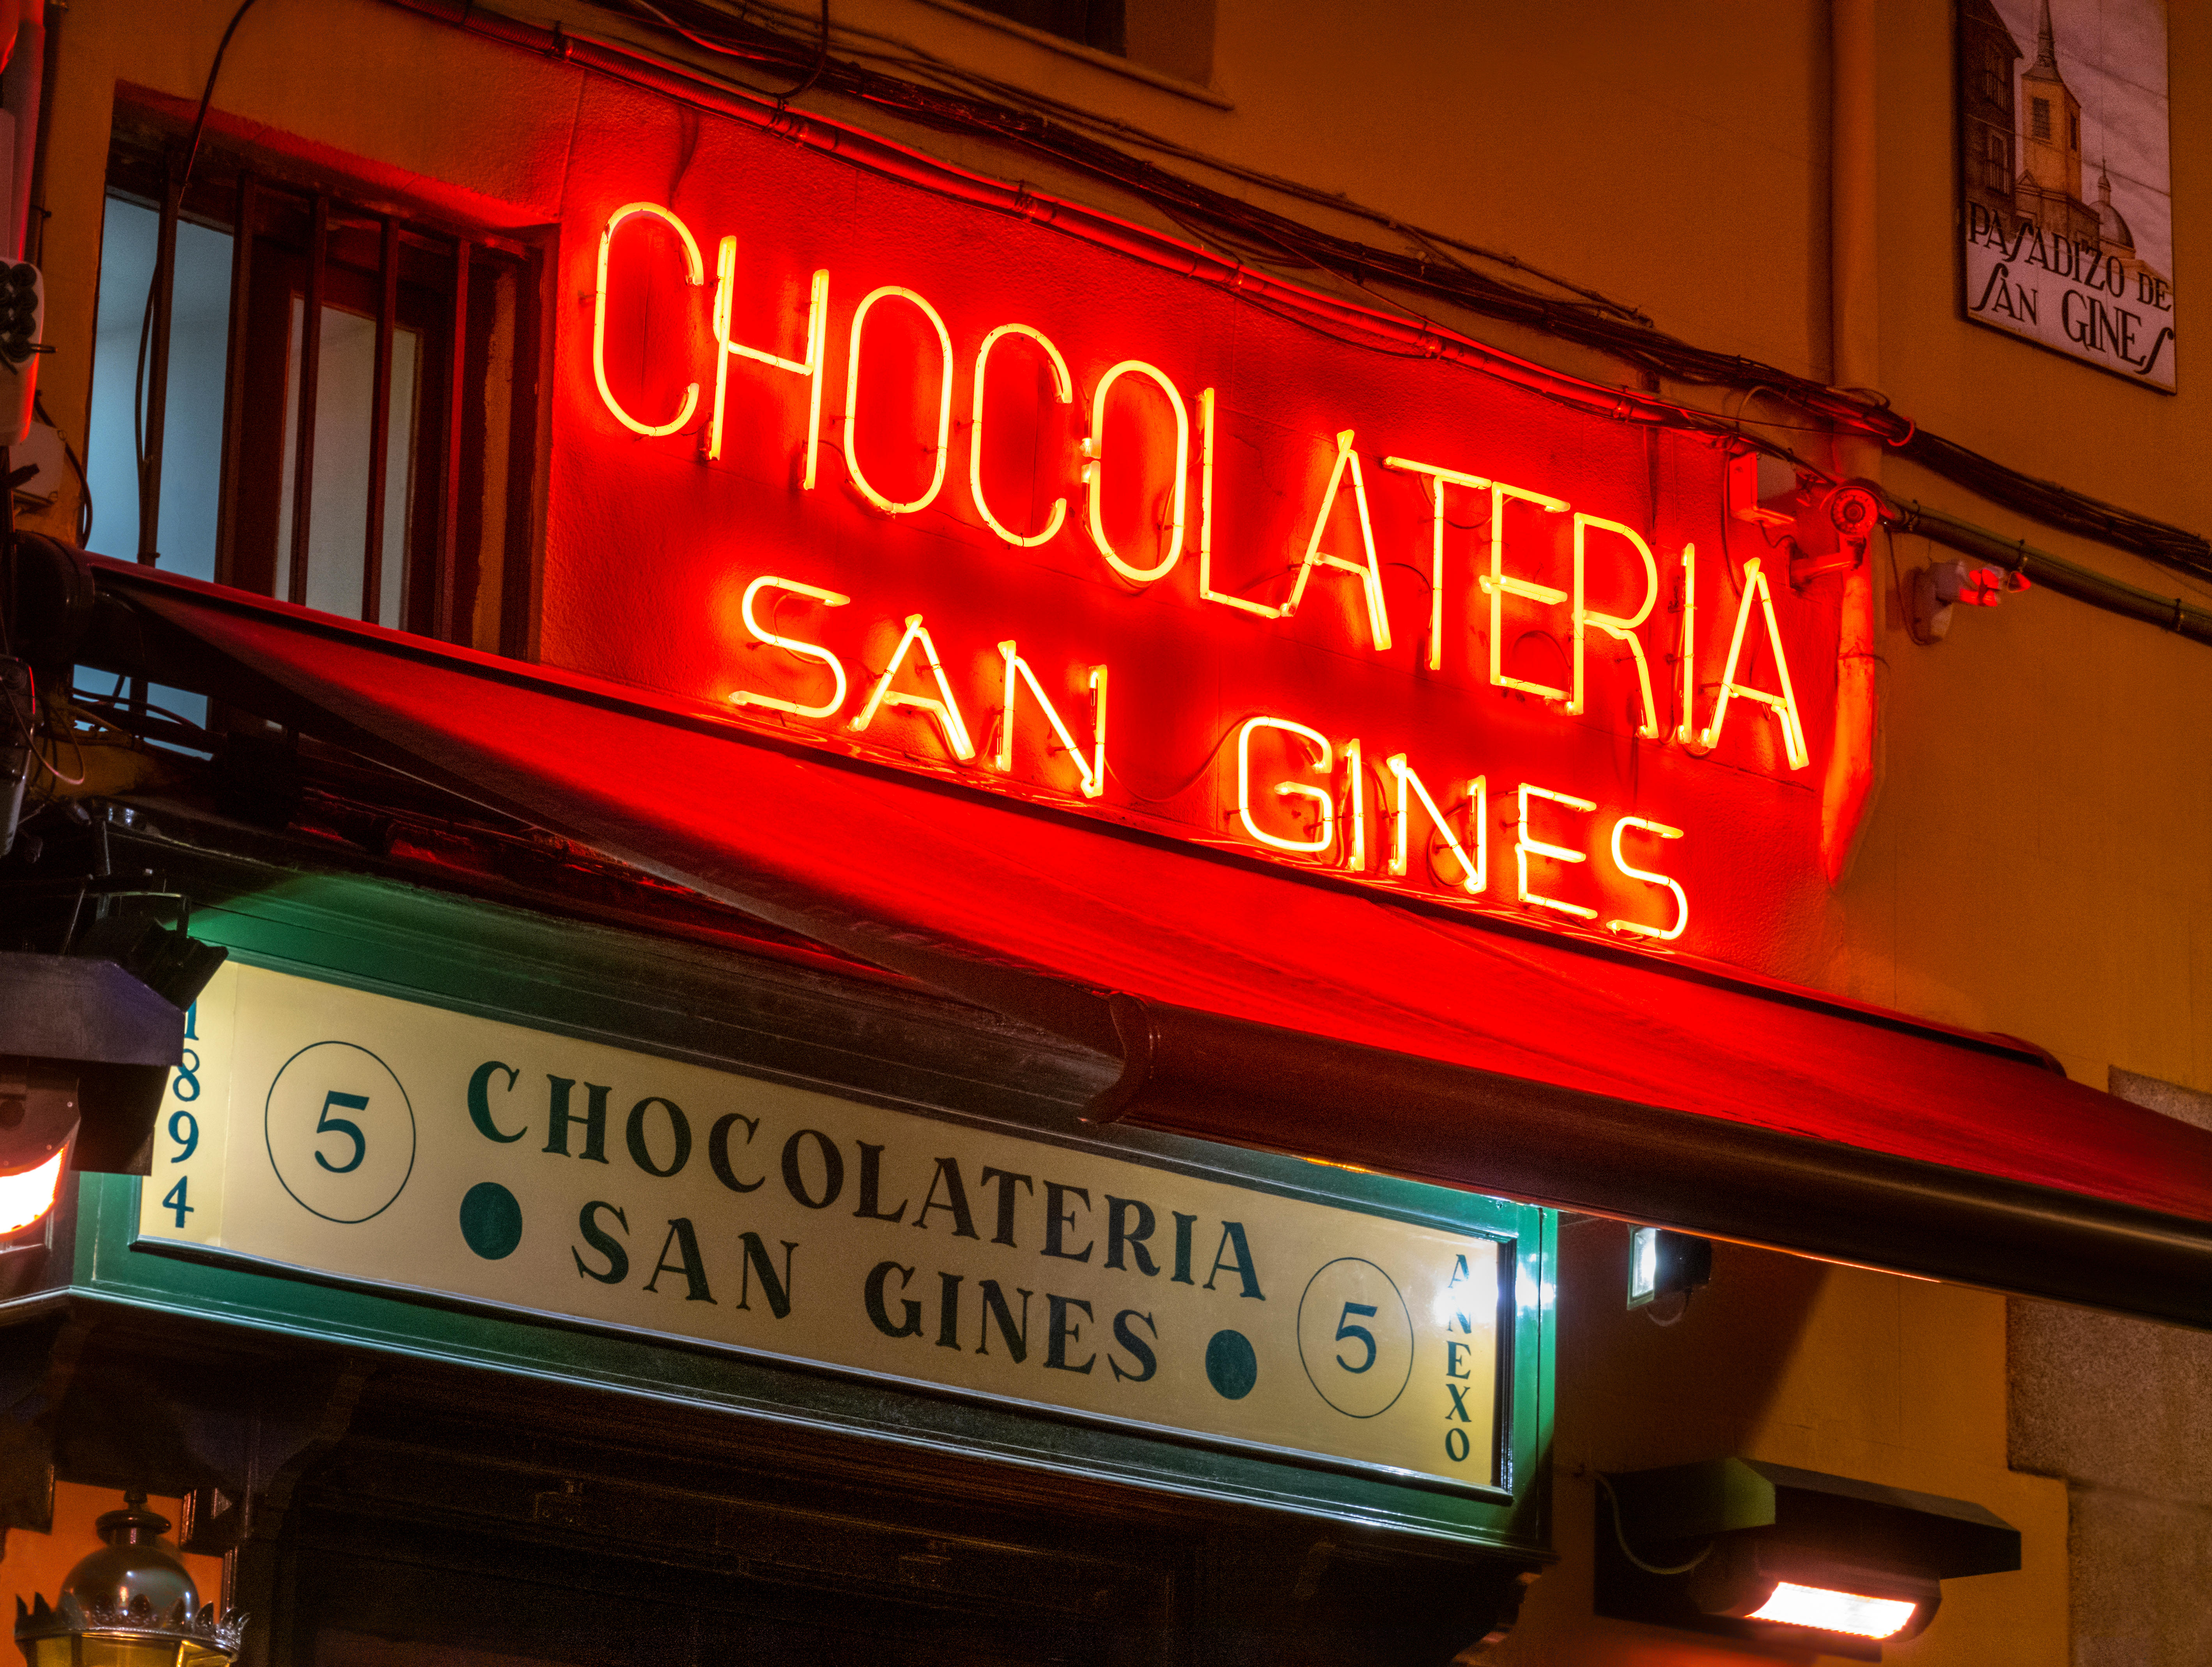 The 10 Best Restaurants In Puerta Del Sol, Madrid